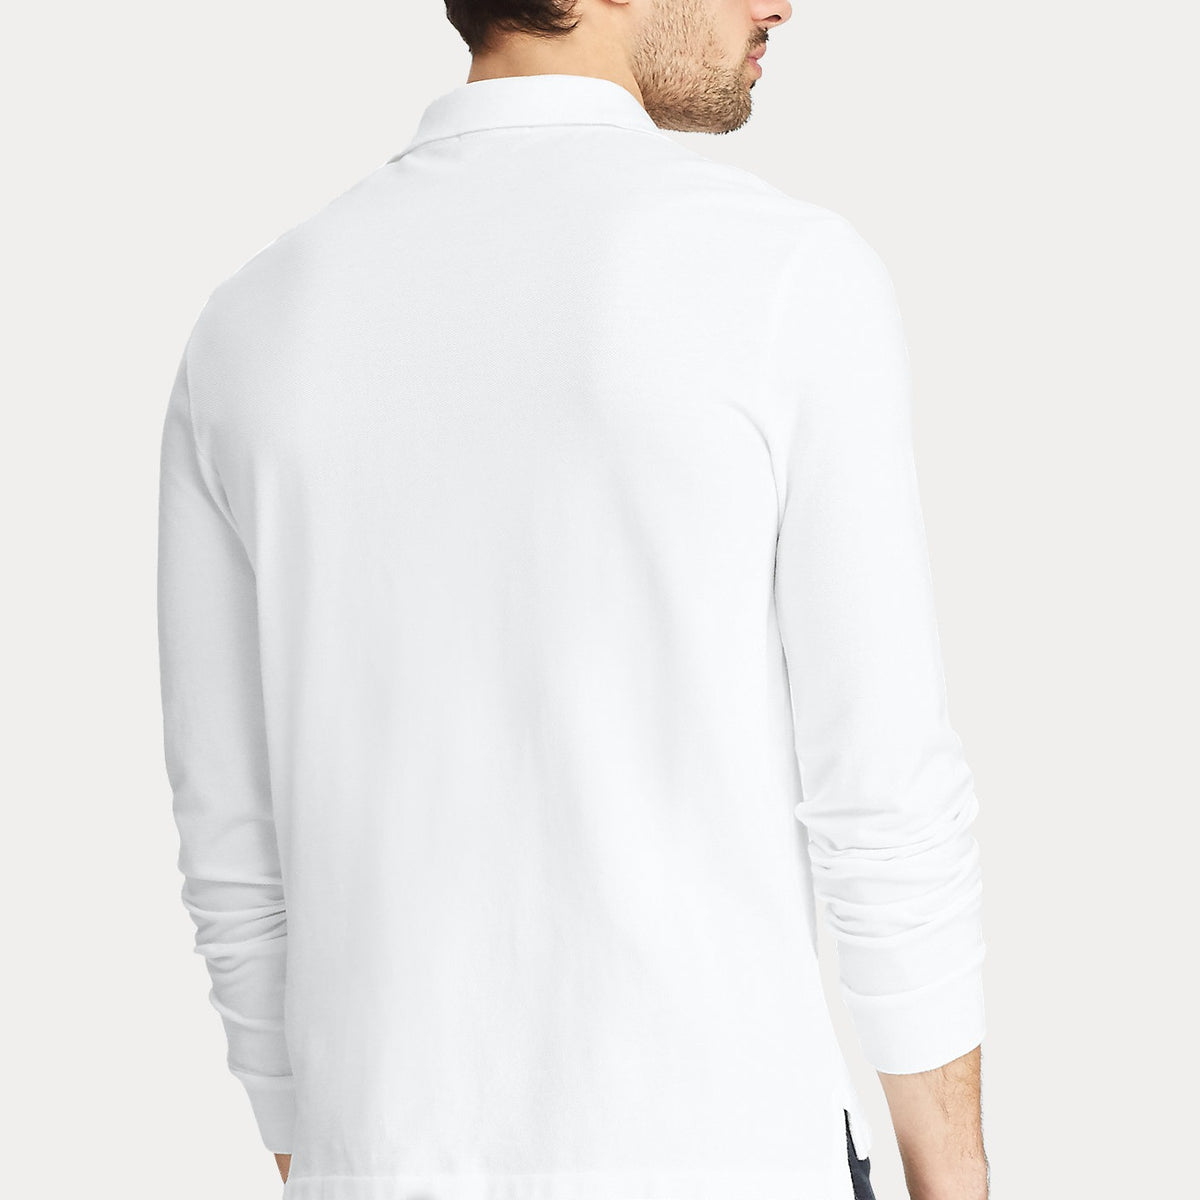 Ralph Lauren Slim Fit Mesh Long-Sleeve Polo White